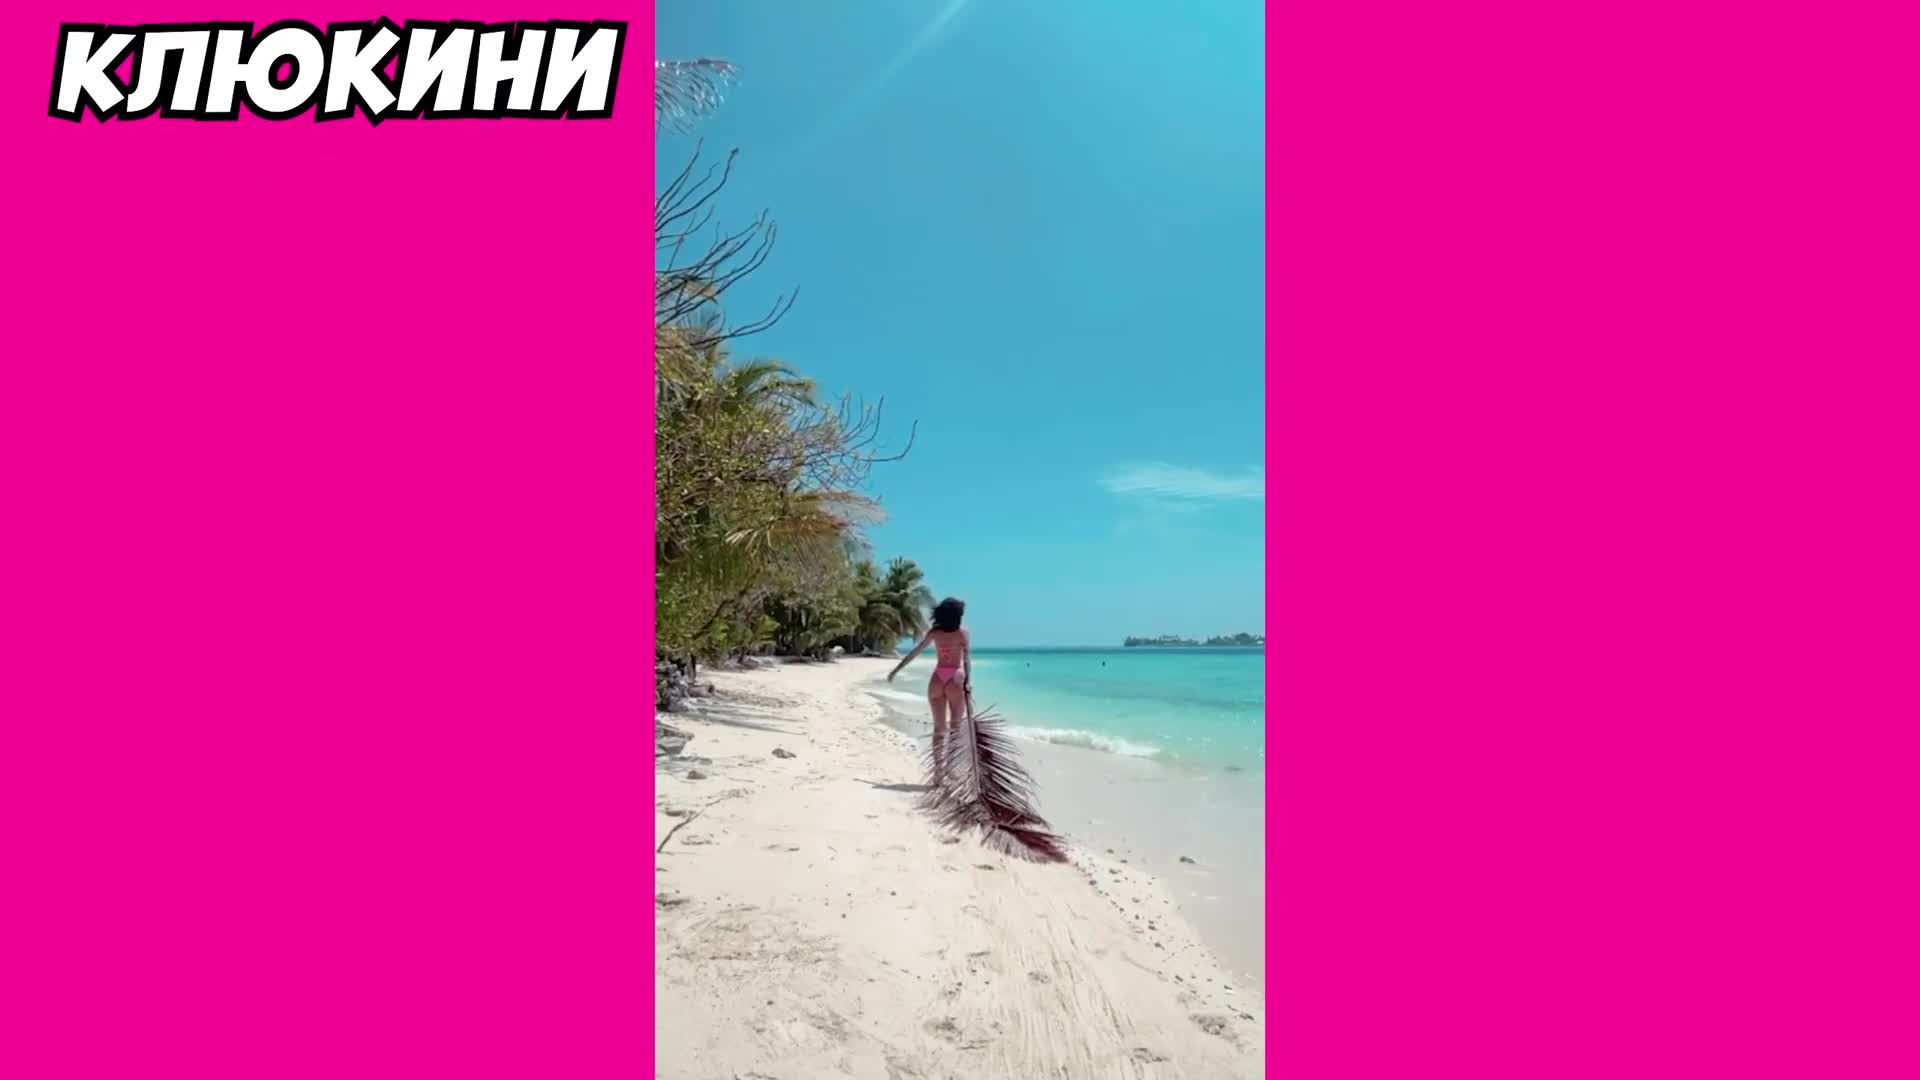 Onlyfans сензацията с видеа от Малдивите